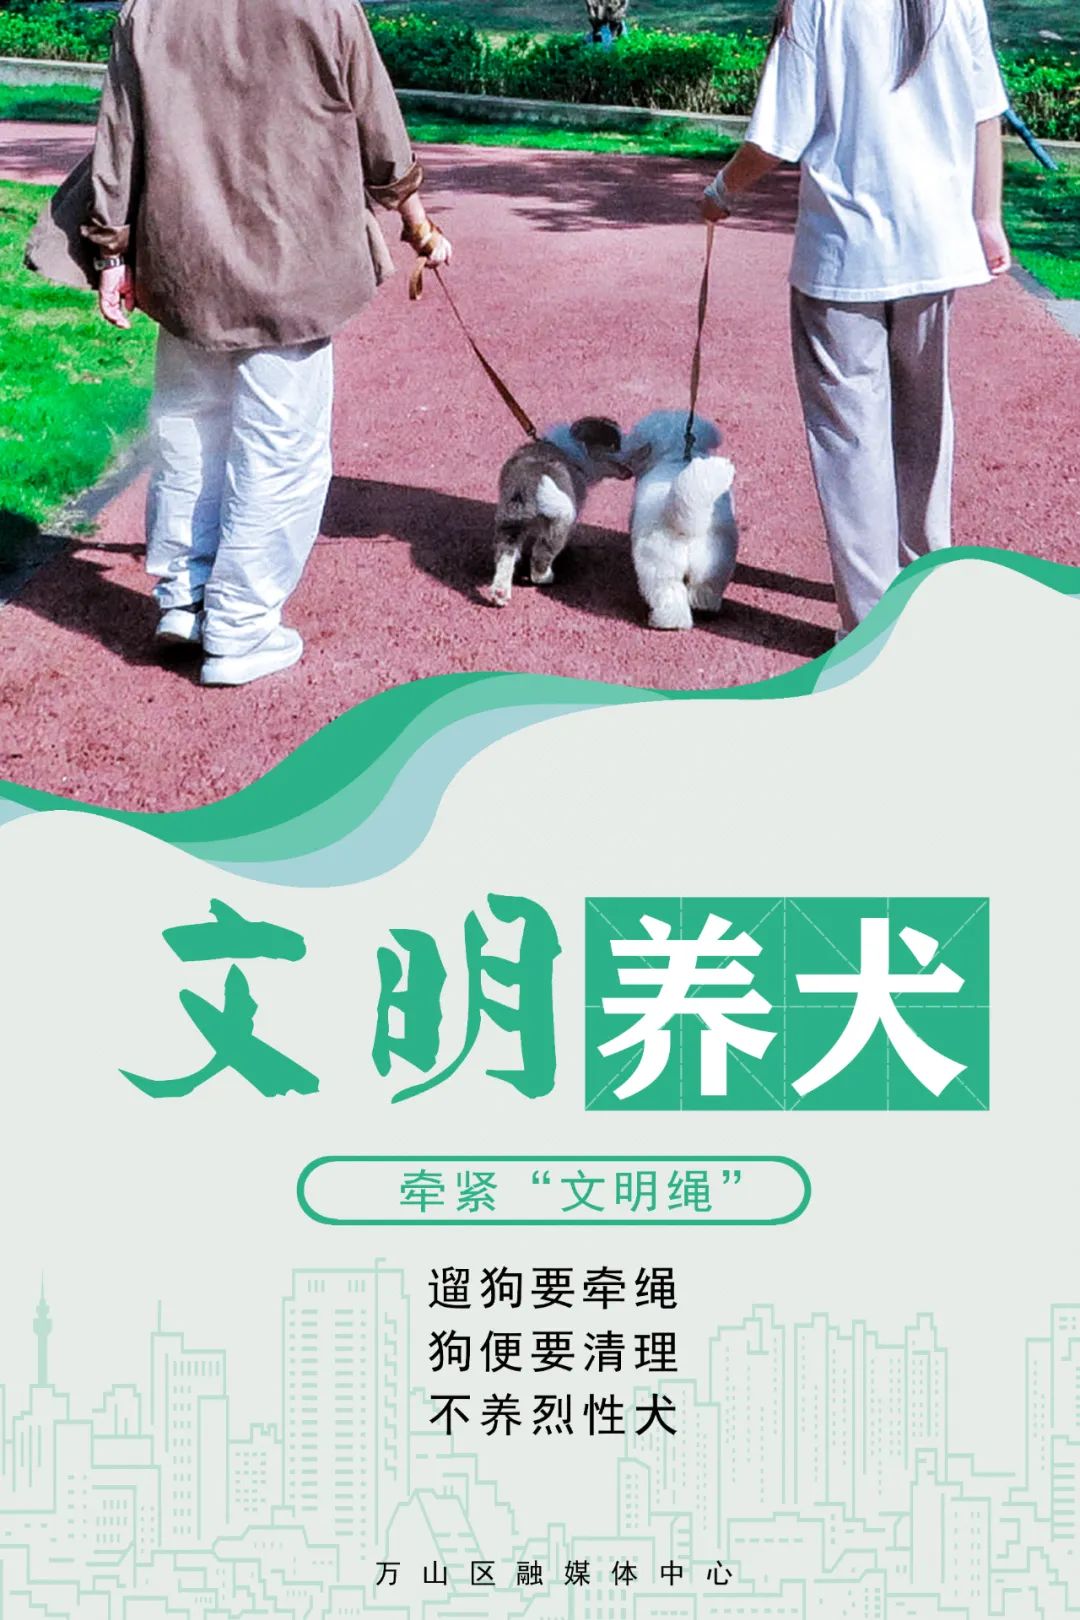 文明养犬公益广告图片